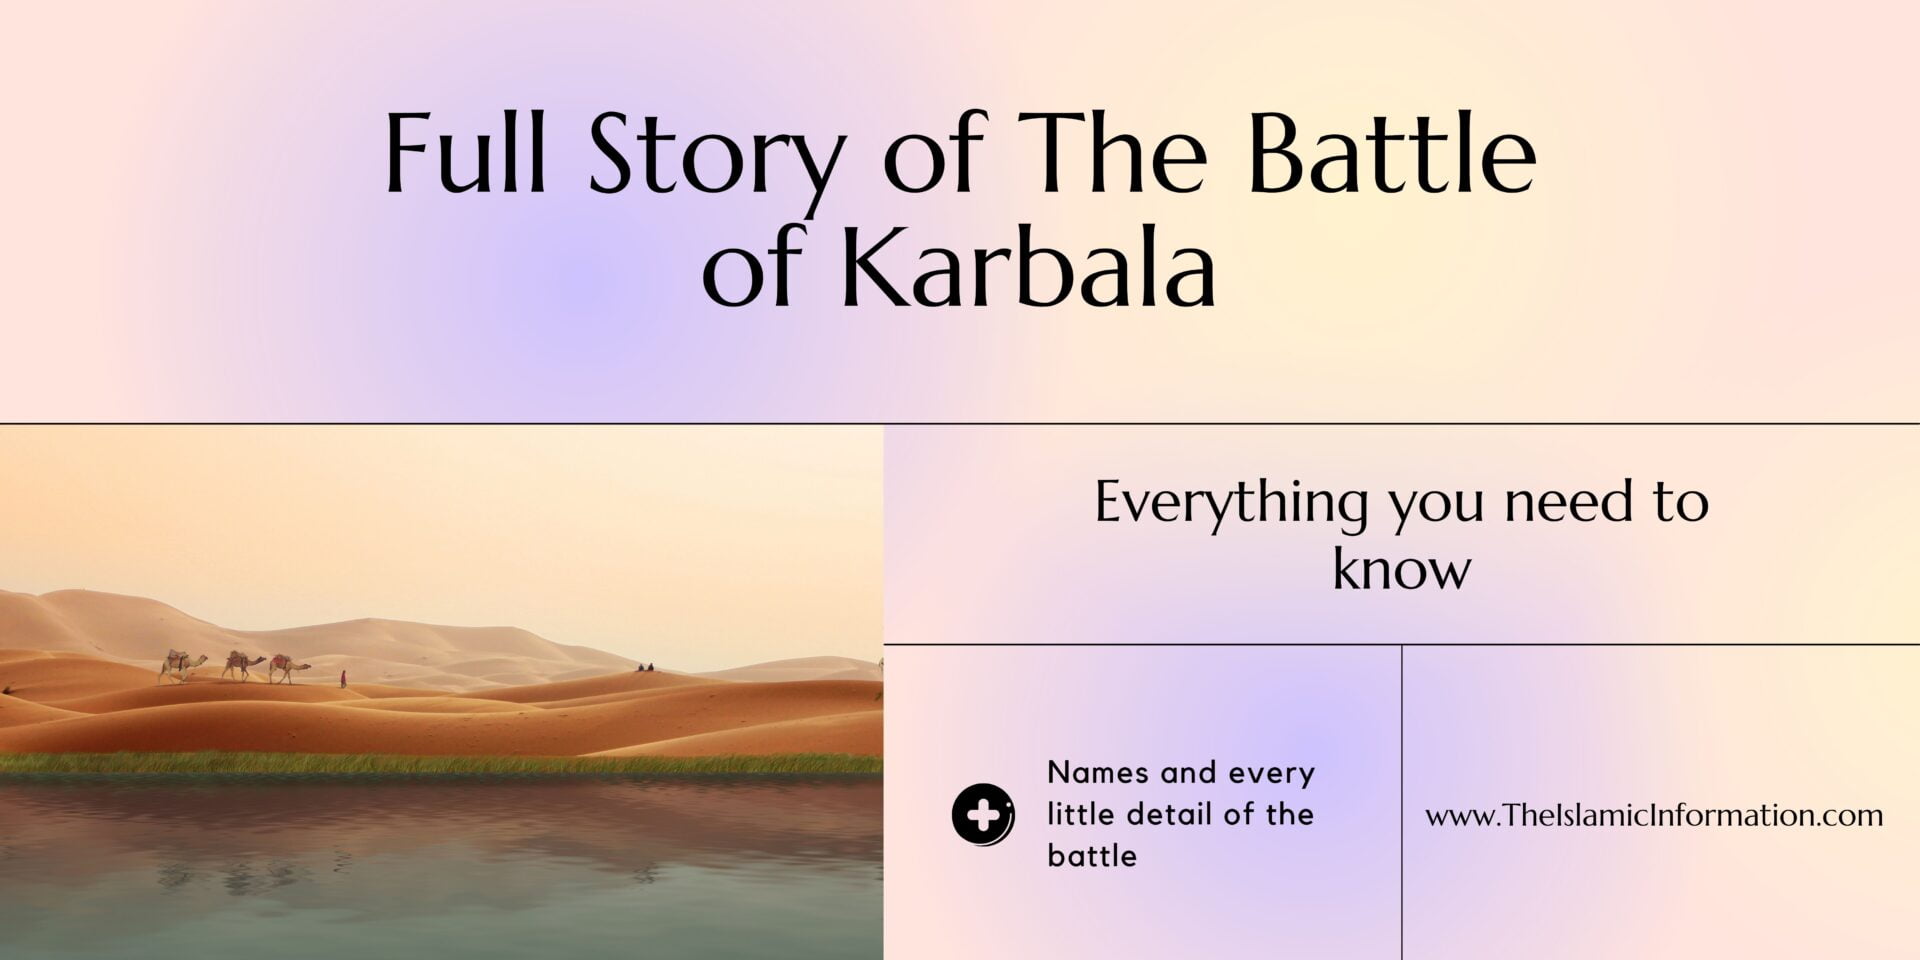 Battle of Karbala full story